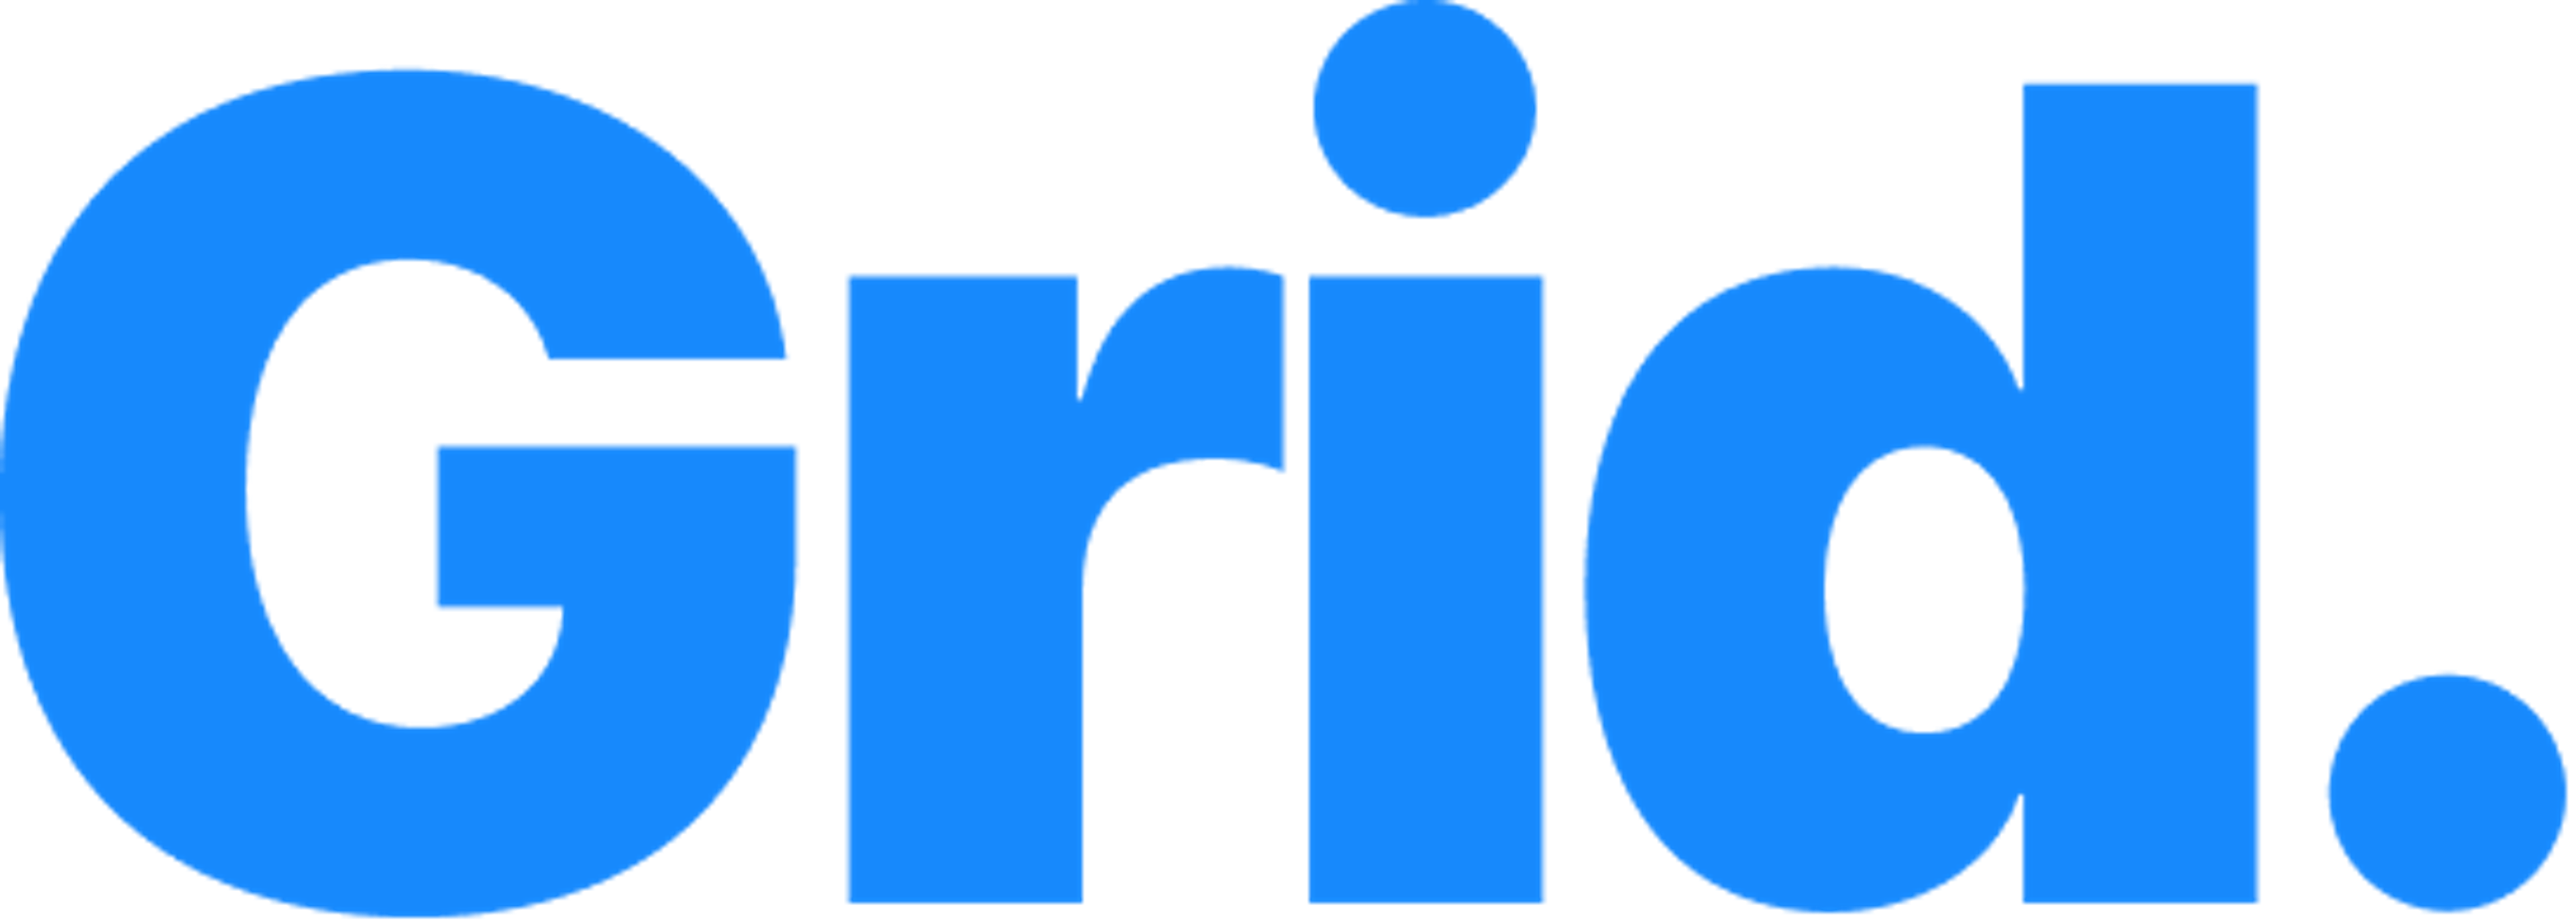 Grid Logo